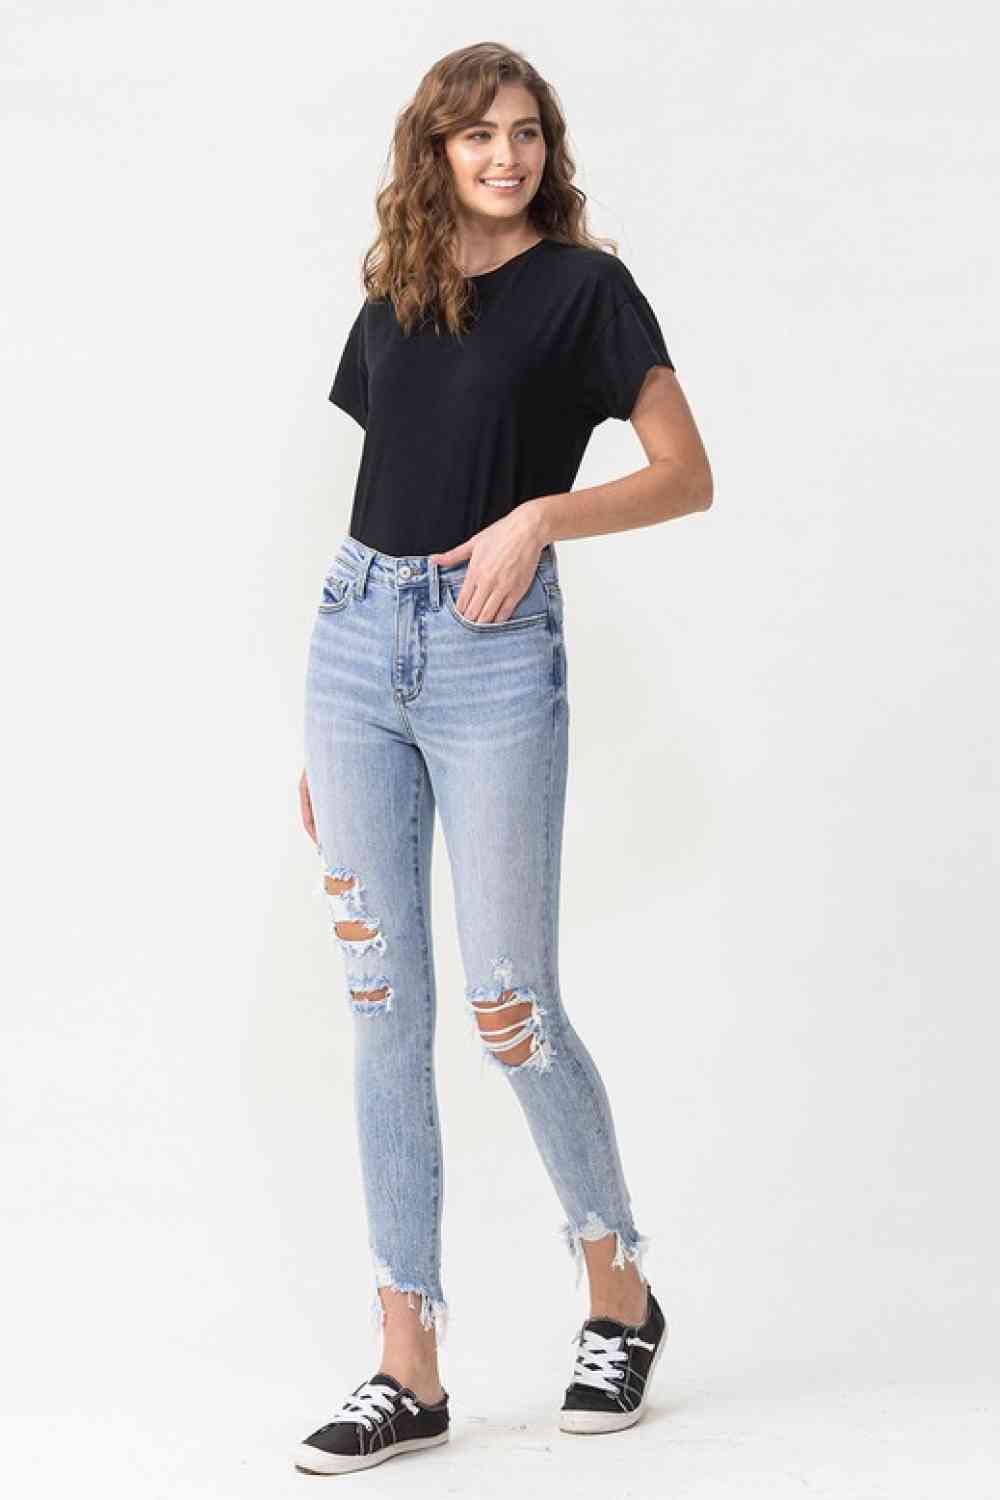 Leighton Lovervet Skinny Jeans